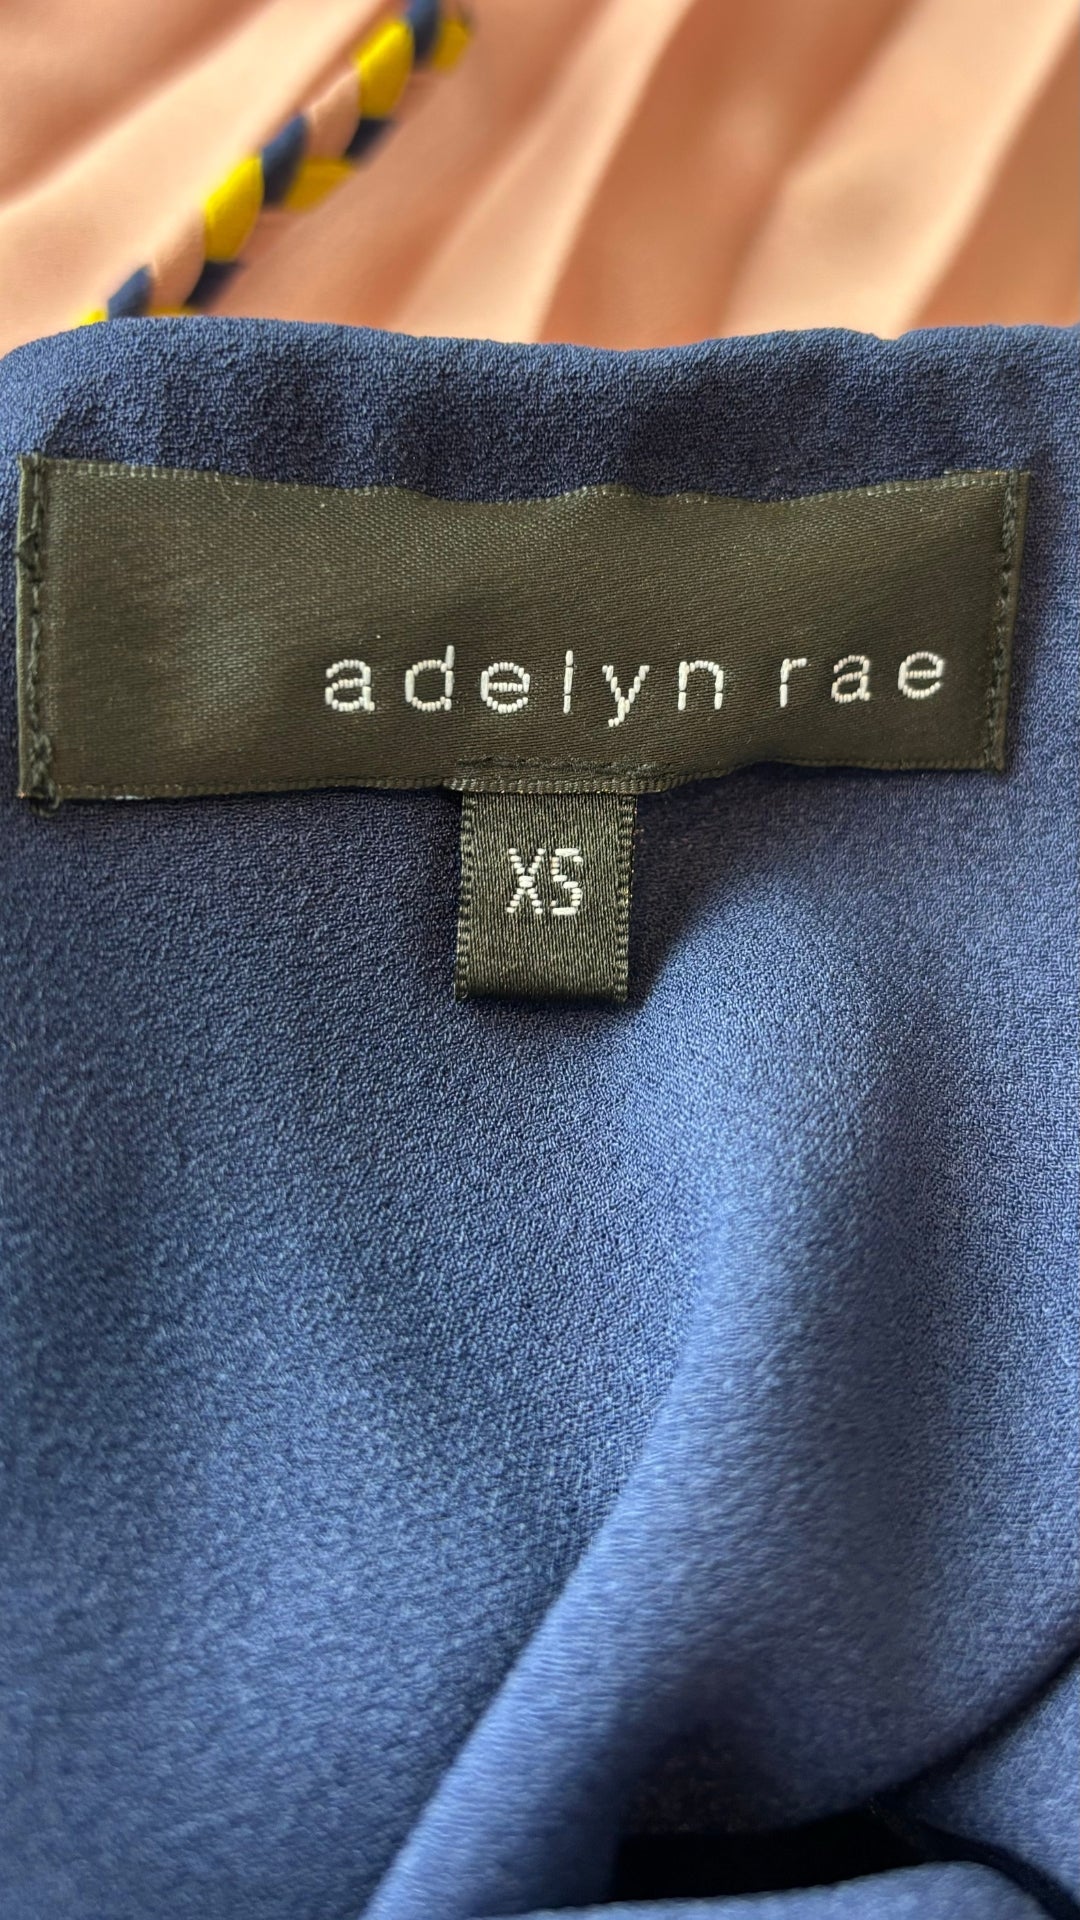 Robe plissée tricolore Adelyn Rae, taille xs. Vue de l'étiquette de marque et taille.